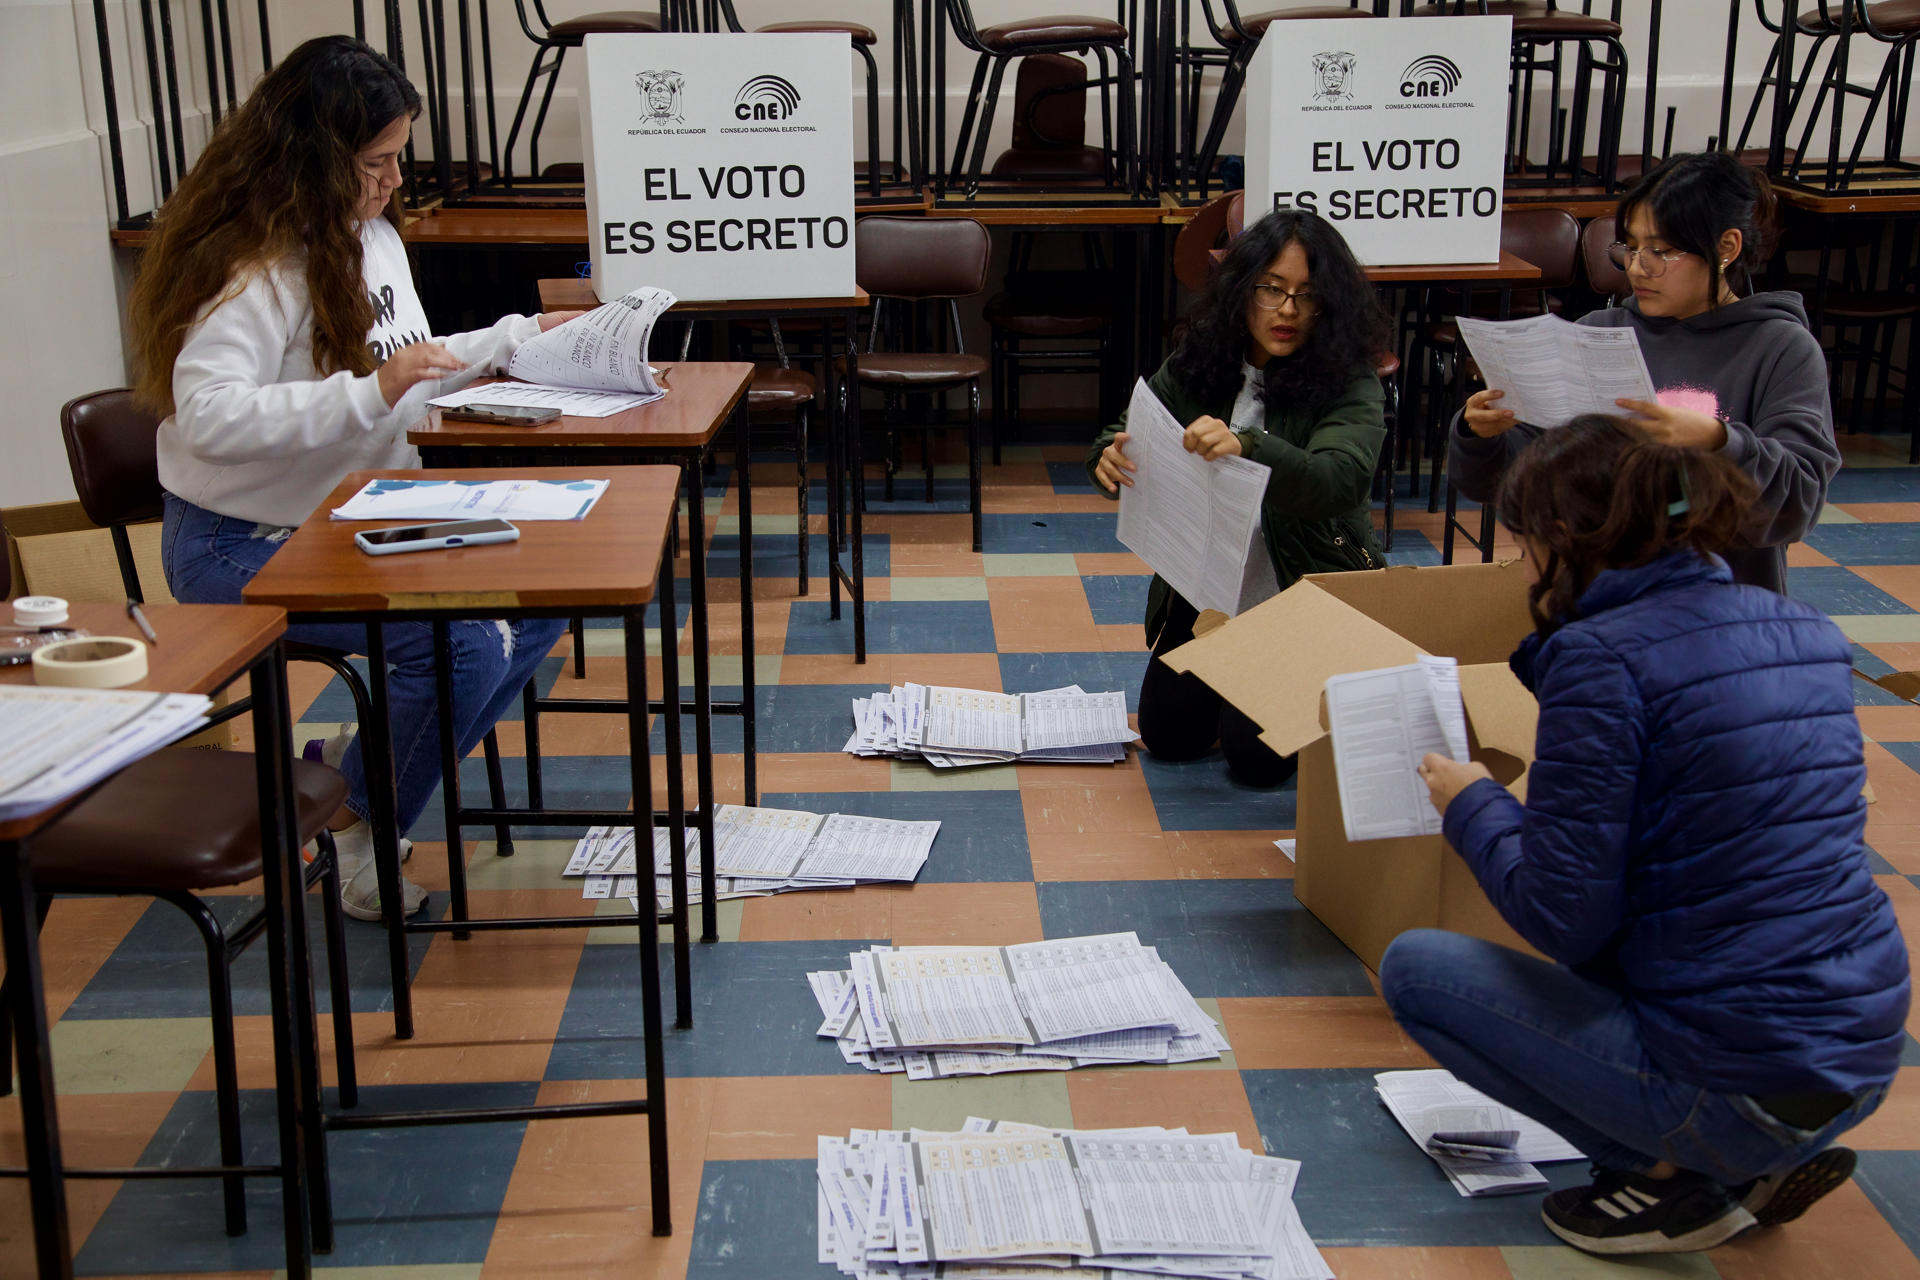 DEMOCRACIA. Labores de escrutinio y conteo de votos de la consulta popular y referéndum.